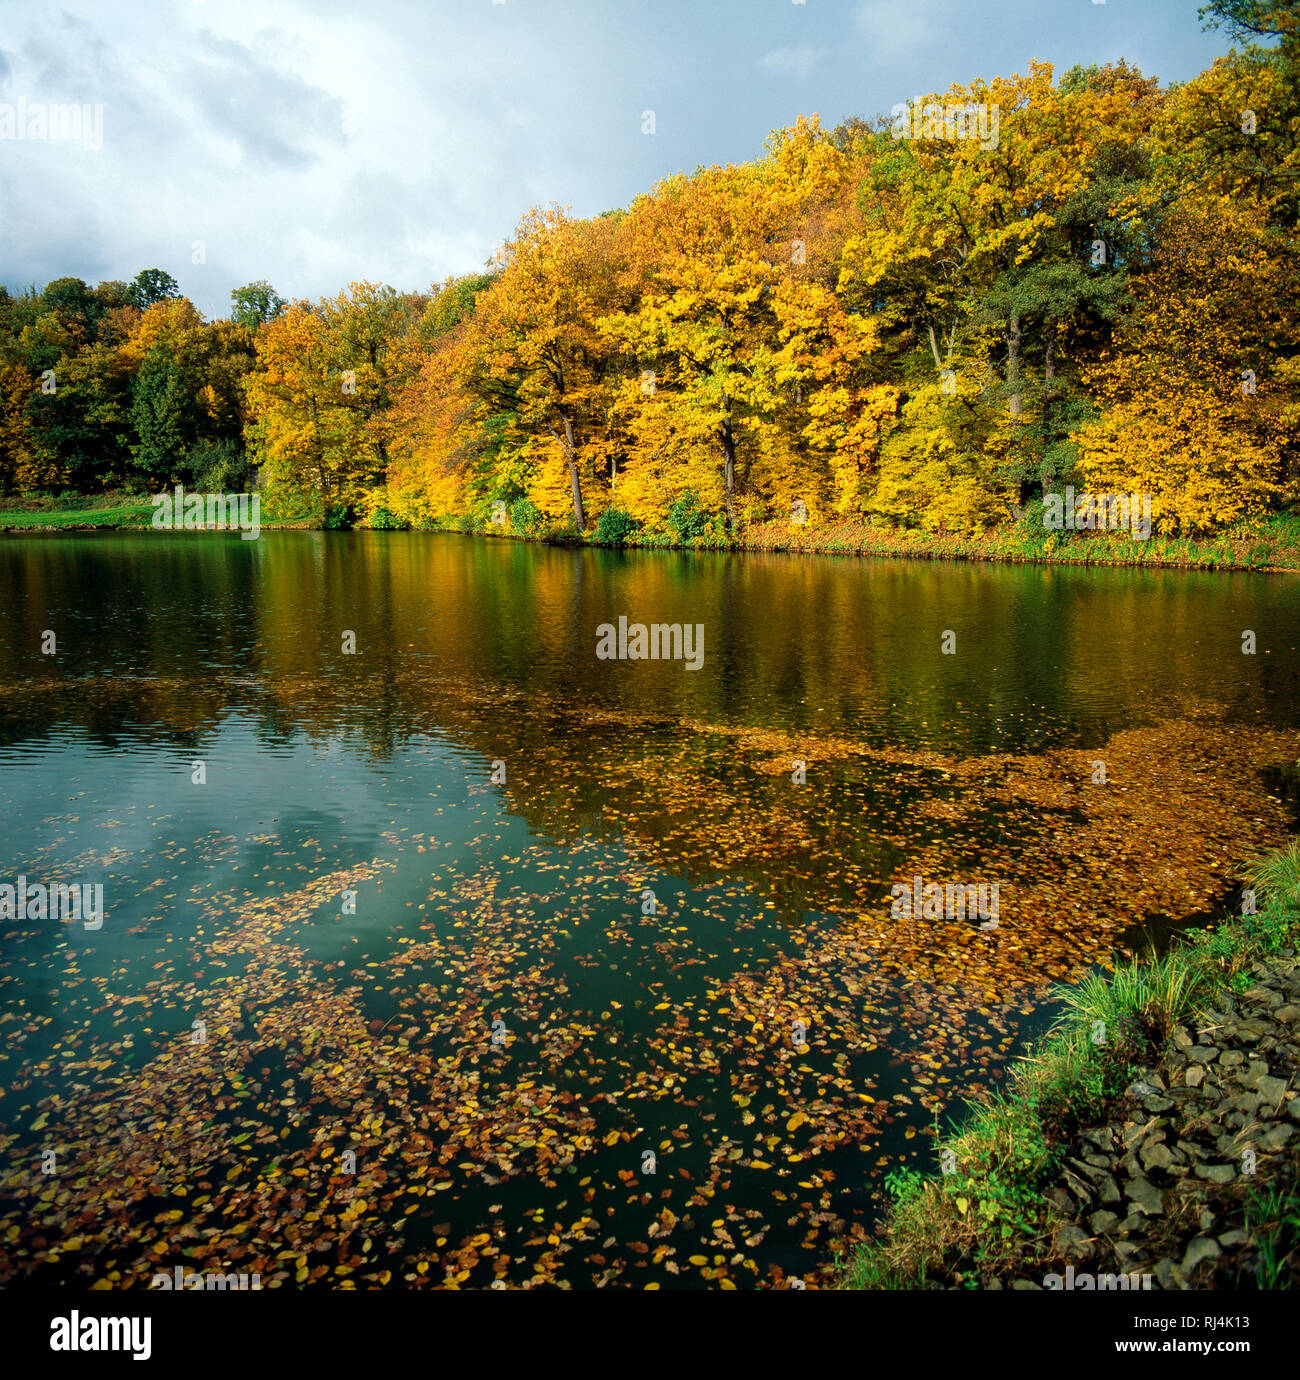 Herbstlich bunte Laubb?ume s?umen idyllischen Waldsee Stock Photo